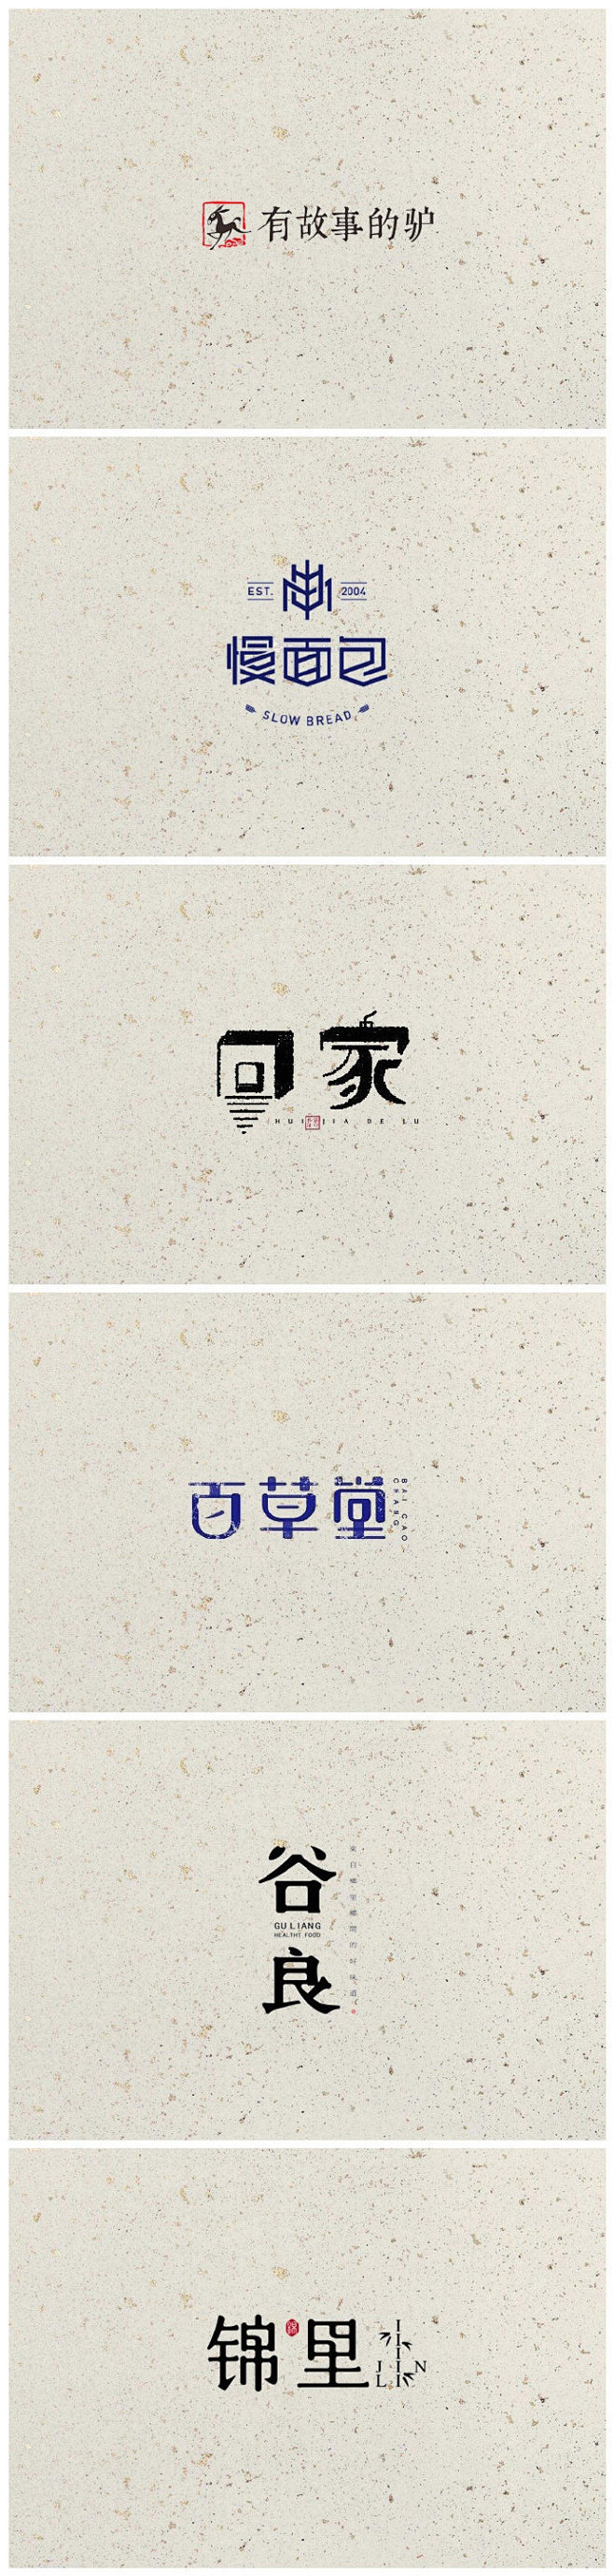 一组中国风的logo设计案例 #标志分享...